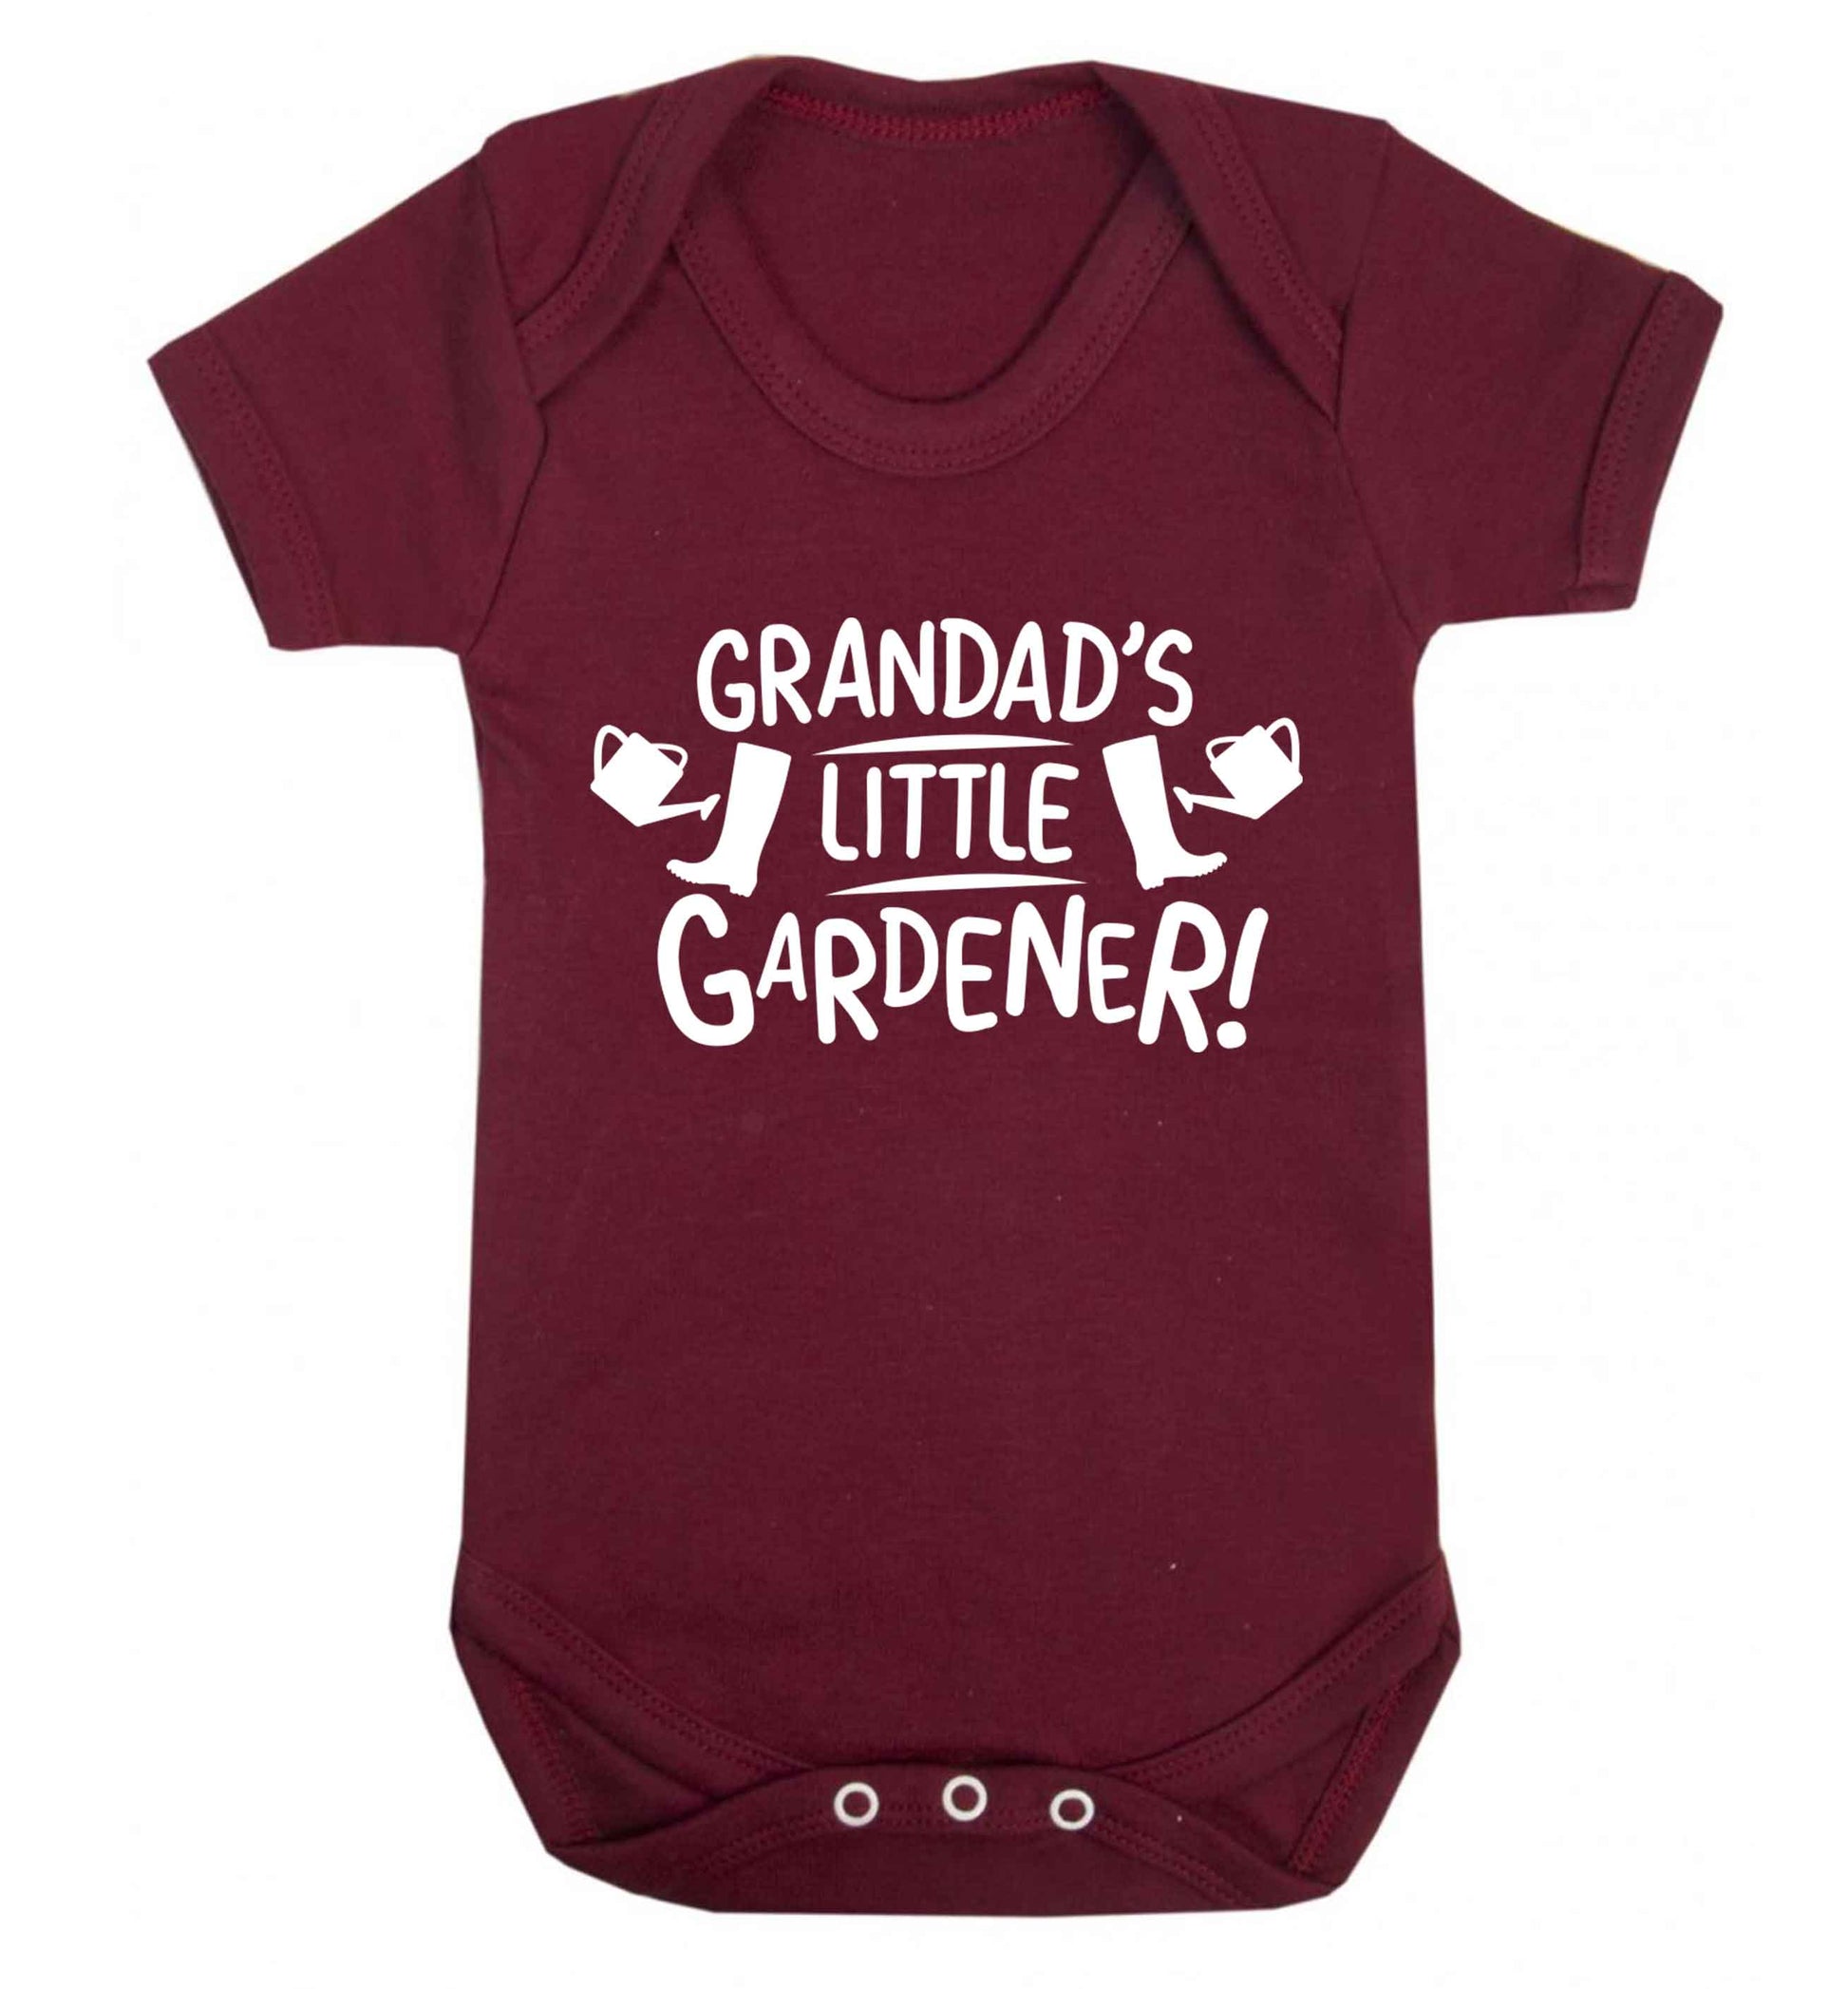 Grandad's little gardener Baby Vest maroon 18-24 months